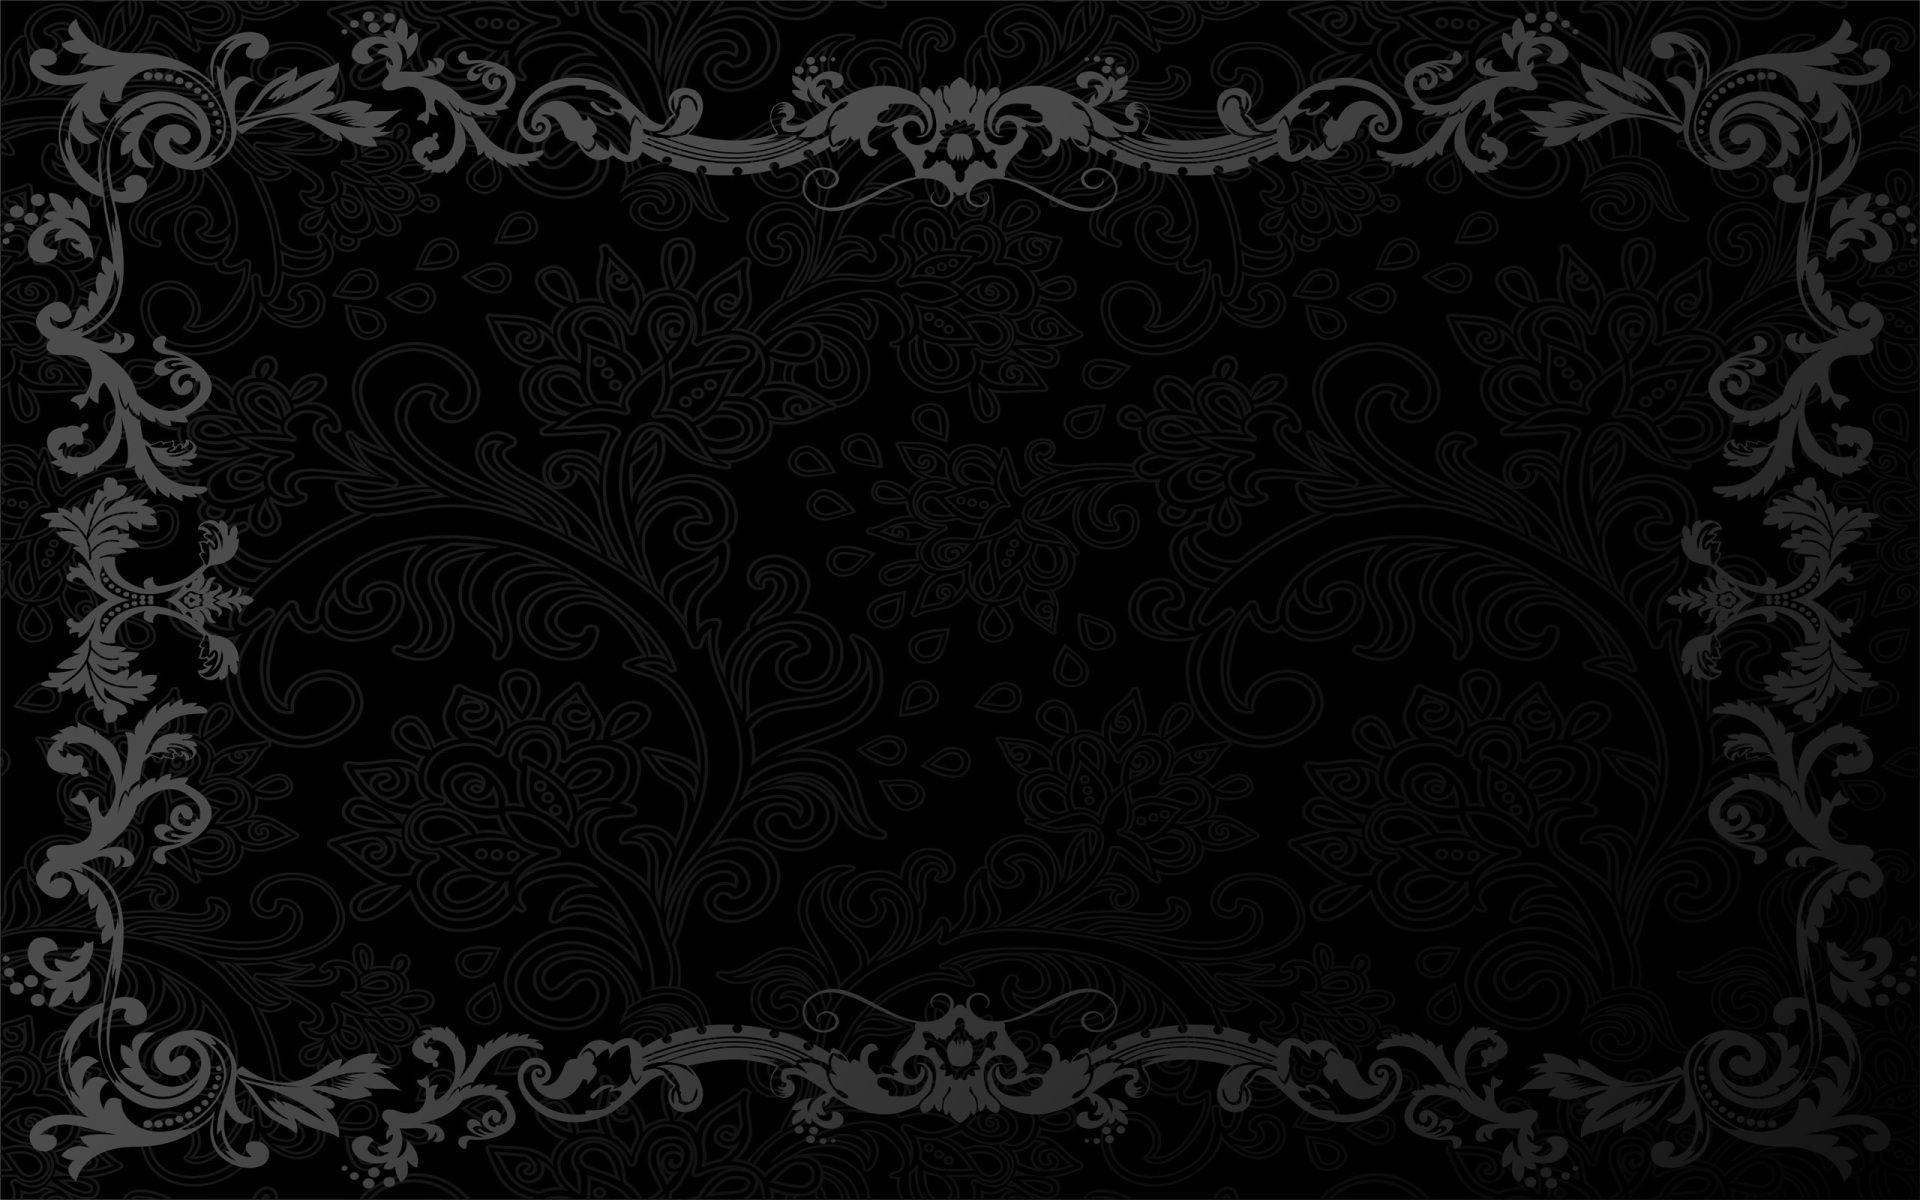 Hình nền đen cổ điển: Hãy khám phá bức ảnh hình nền đen cổ điển đầy huyền bí và ấn tượng. Với tông màu đen tuyền và các chi tiết hoa văn cổ điển đan xen, bức ảnh sẽ mang lại cho bạn một cảm giác sang trọng, lịch sự và đặc biệt là không gian đầy bí ẩn.